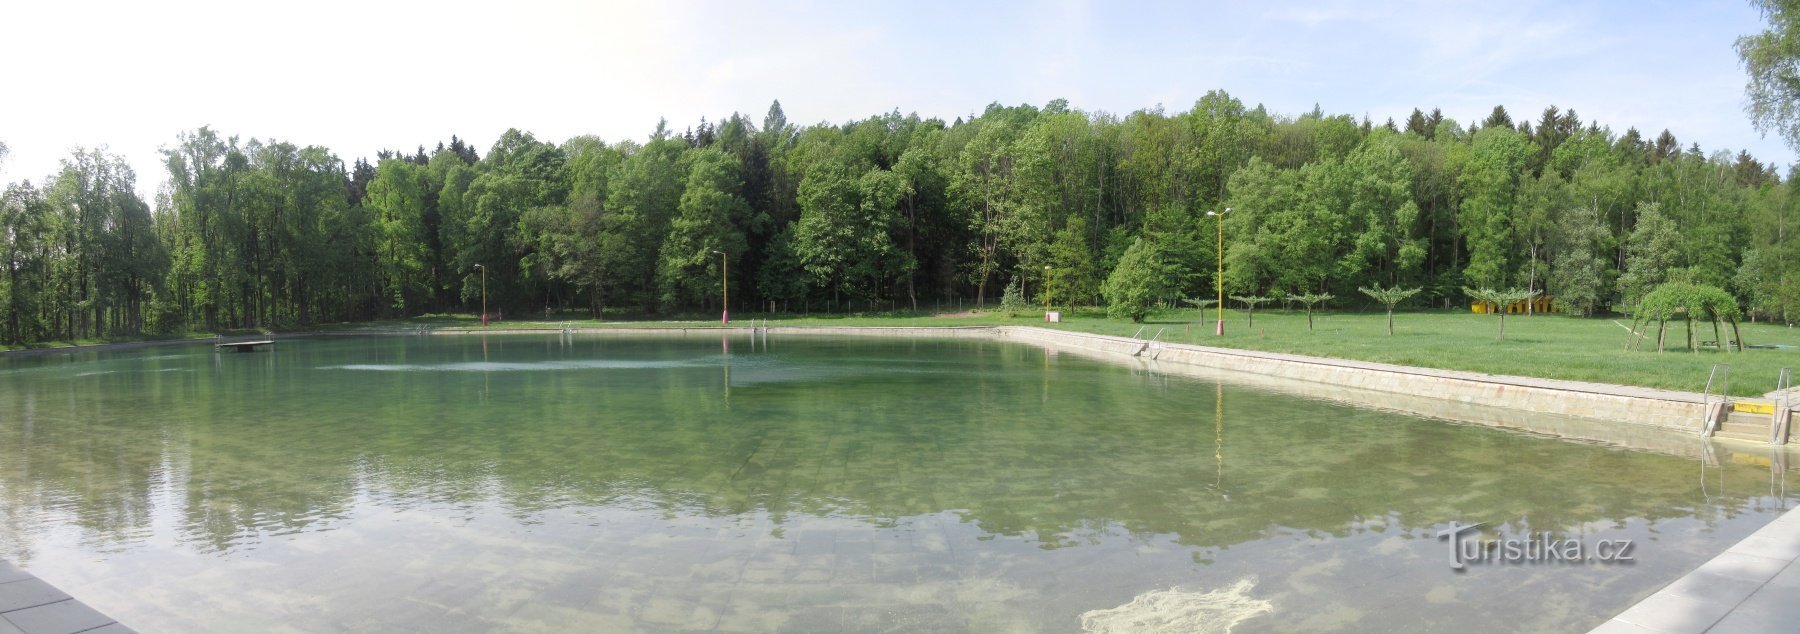 Osada Dachovy - Dachova-Schwimmbad, ursprünglich Dachova-Sonnenbad